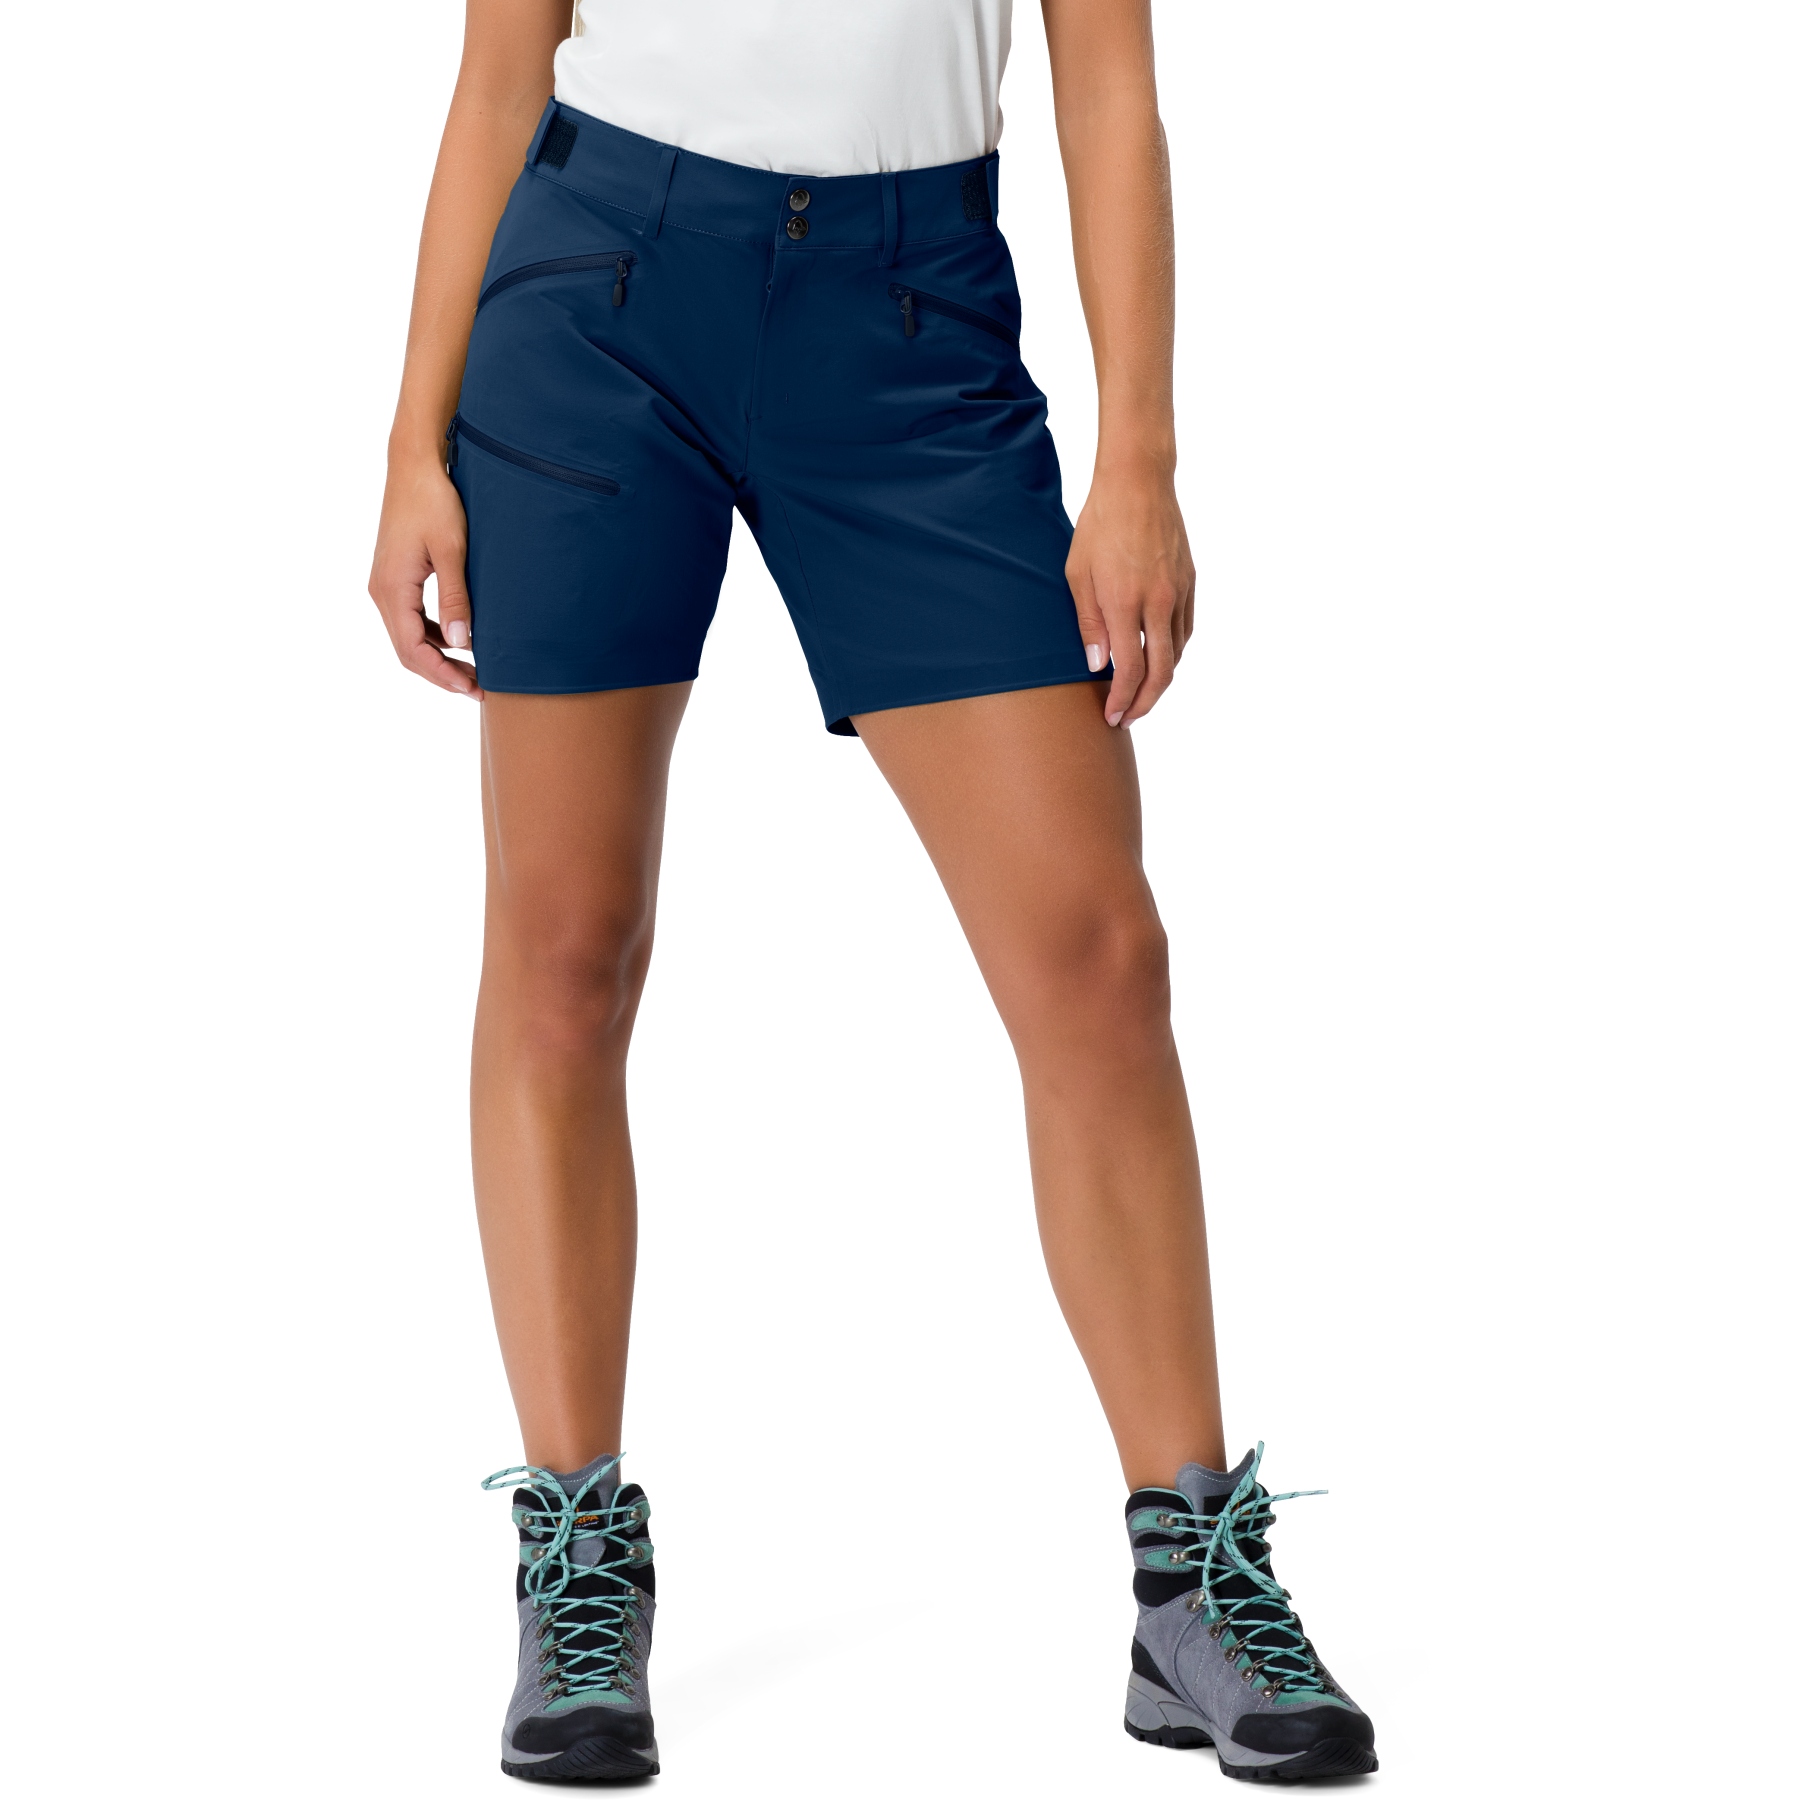 Produktbild von Norrona falketind flex1 Damen Shorts - Indigo Night